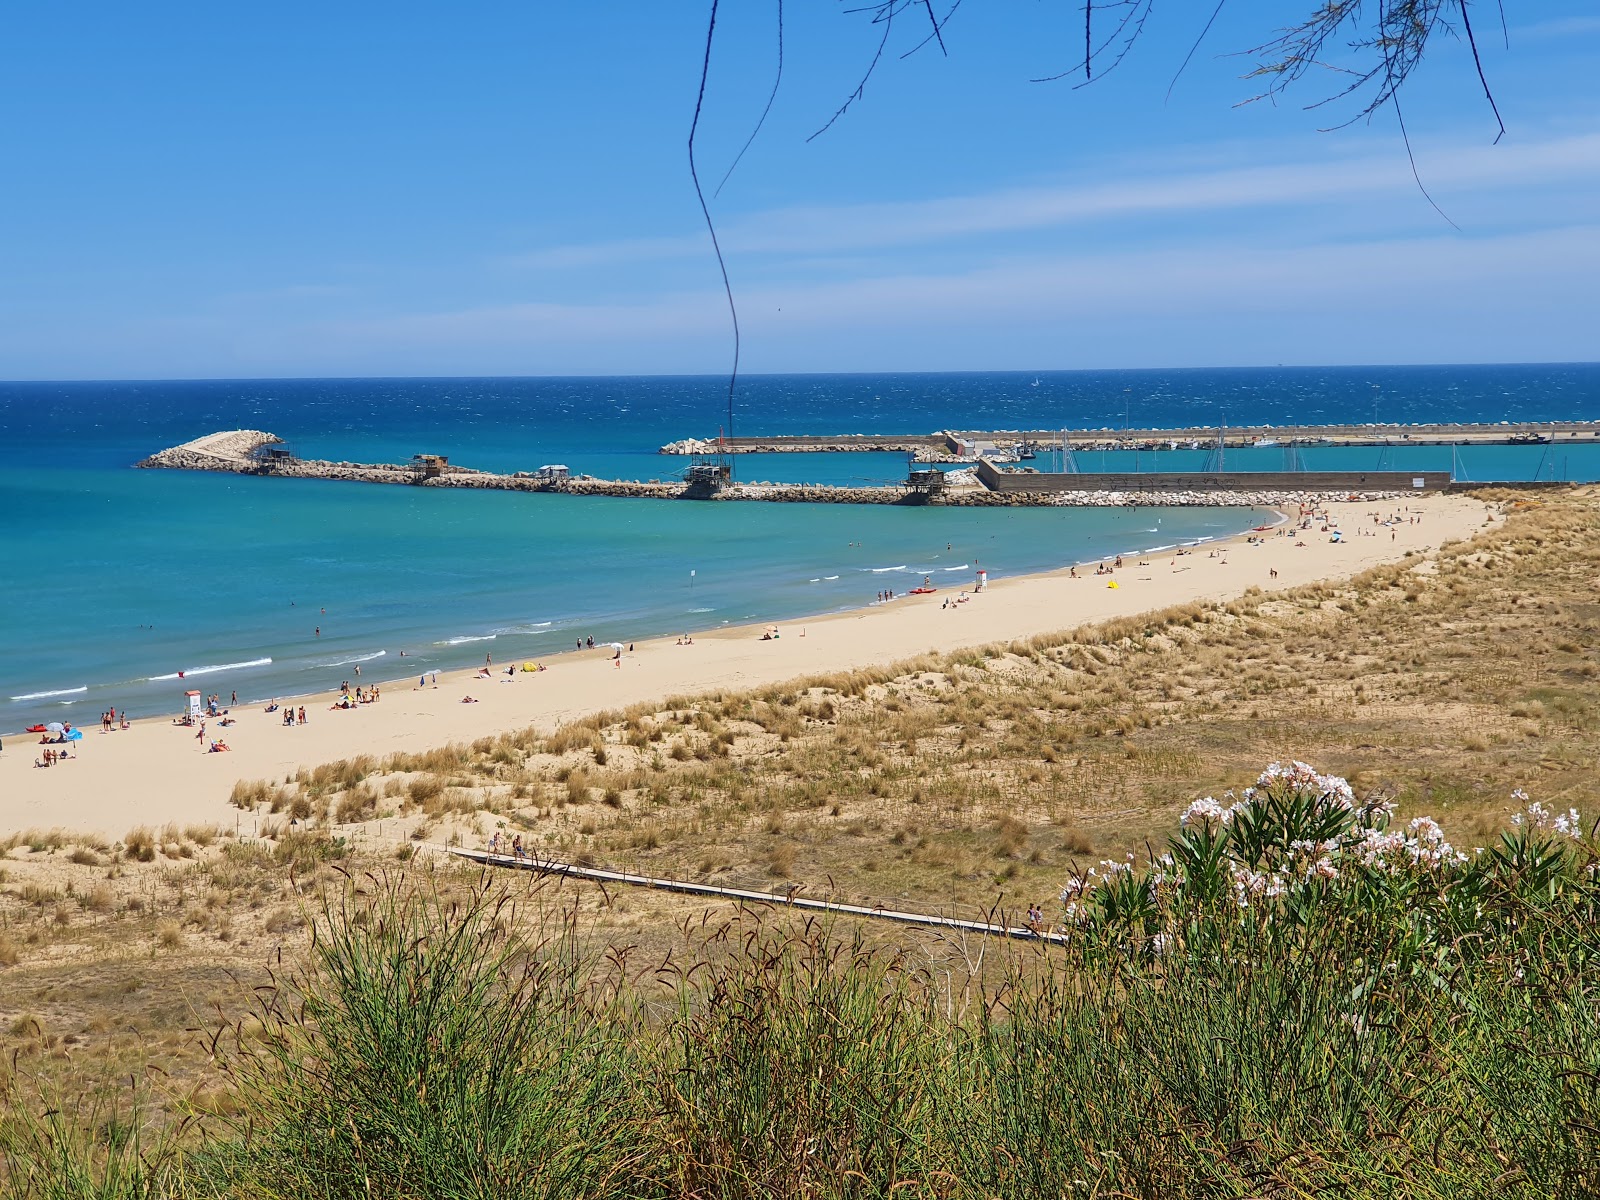 Spiaggia di Punta Penna'in fotoğrafı i̇nce kahverengi kum yüzey ile